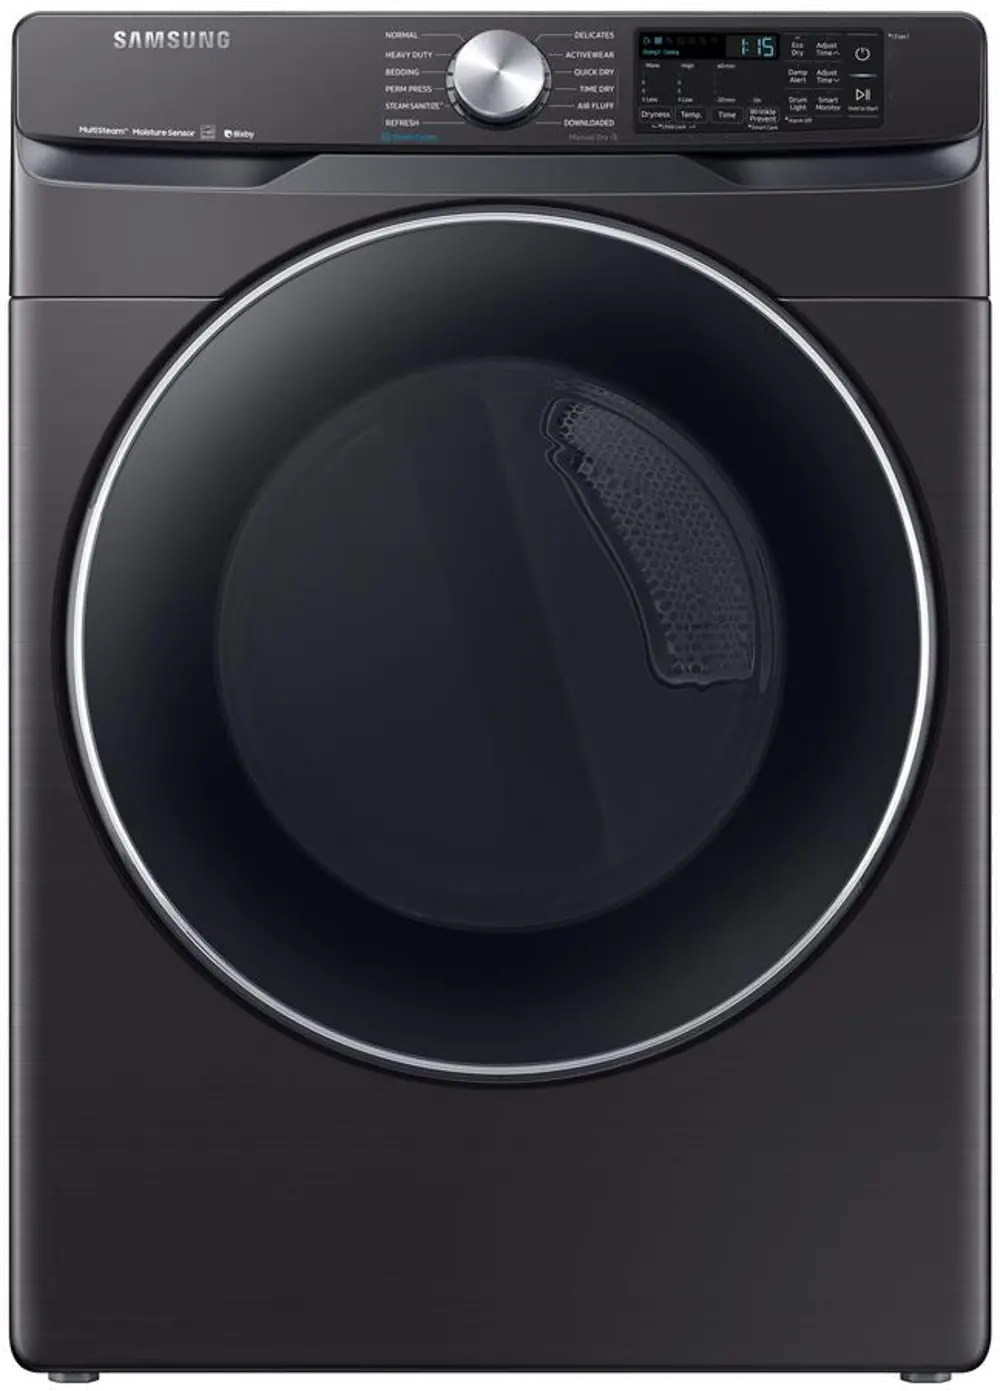 DVE45R6300V Samsung Steam Sanitize+ Electric Dryer  - 7.5 cu. ft. Black Stainless Steel-1